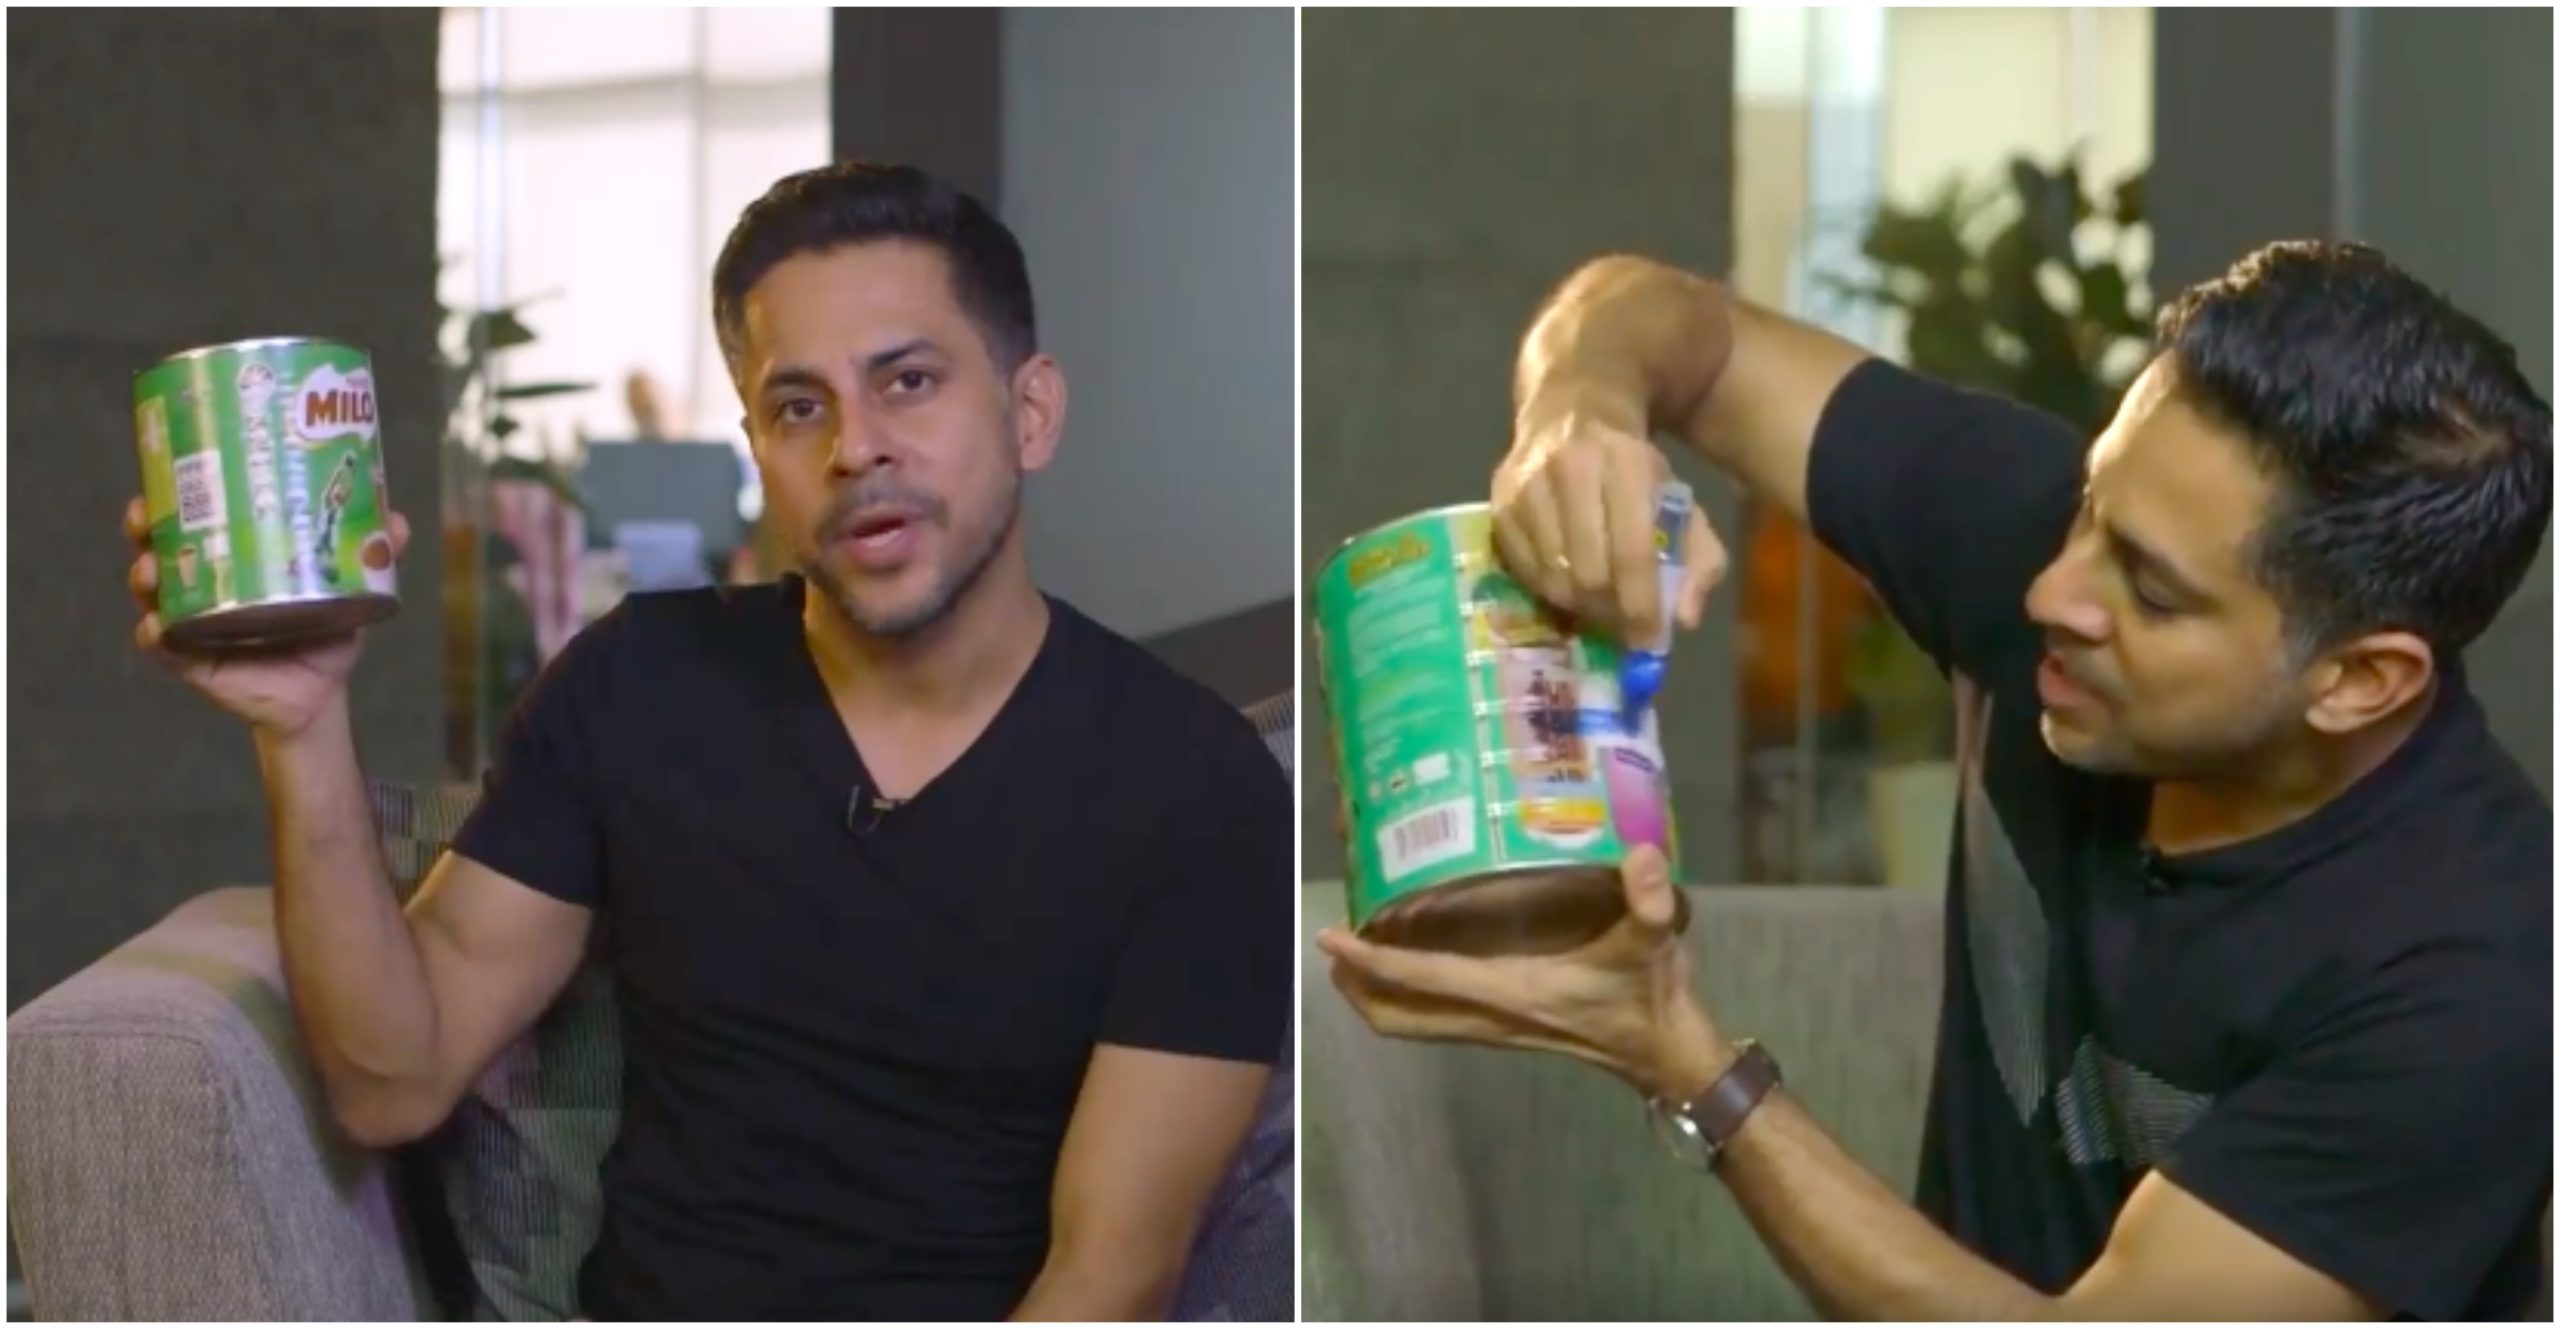 [VIDEO] ‘Milo Yang Dibancuh Hanya Mengandungi 6% Gula Sahaja’ – Nestle Pertahan Milo Minuman Sihat